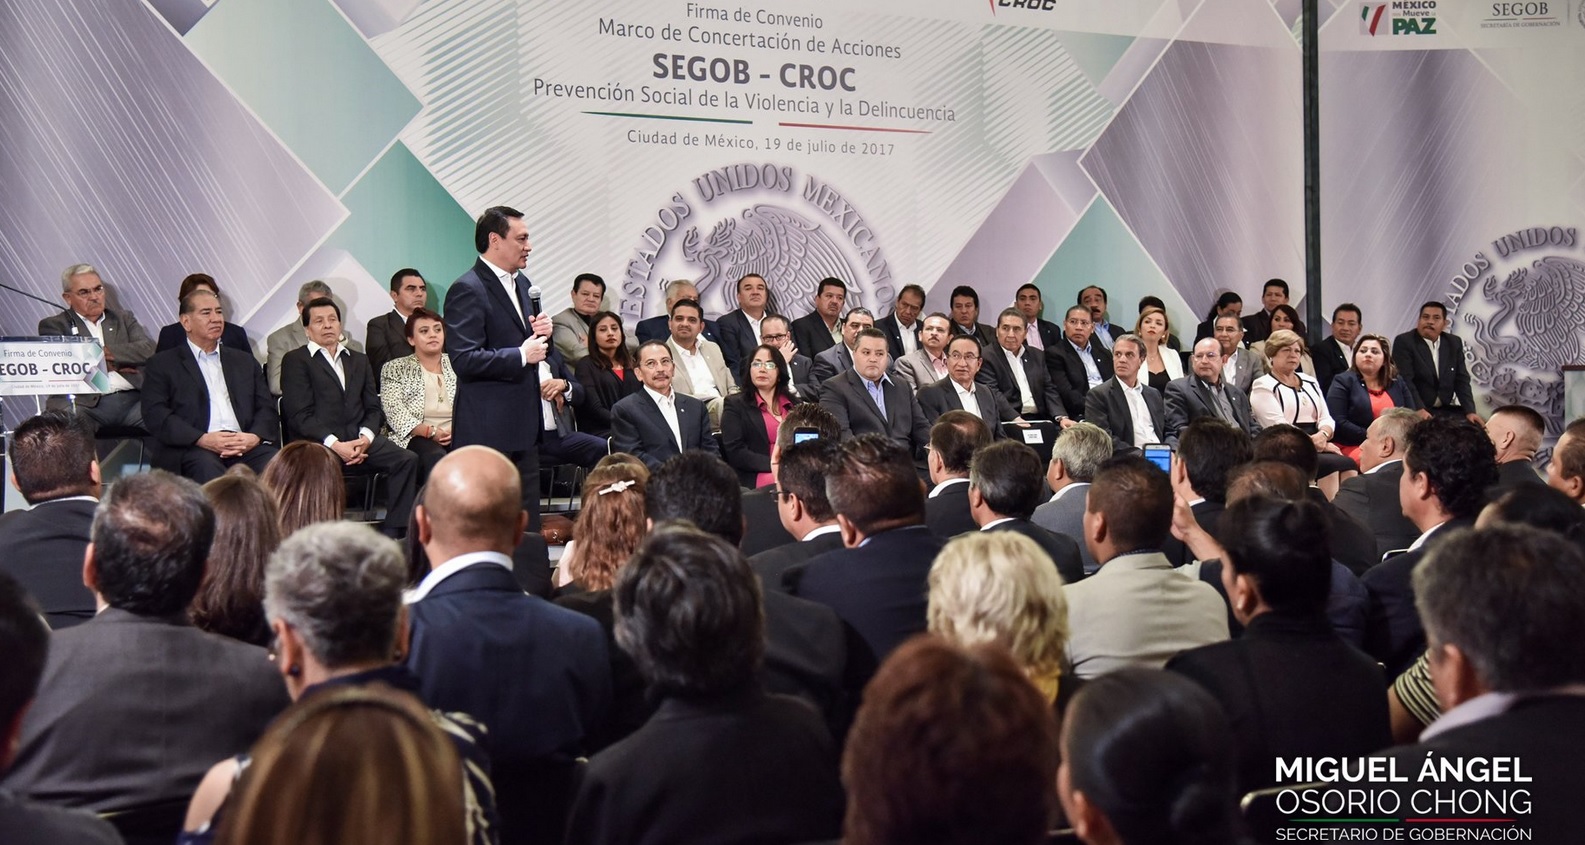 Miguel Angel Osorio Chong, Secretario De Gobernacion, Segob, Convenio, Croc